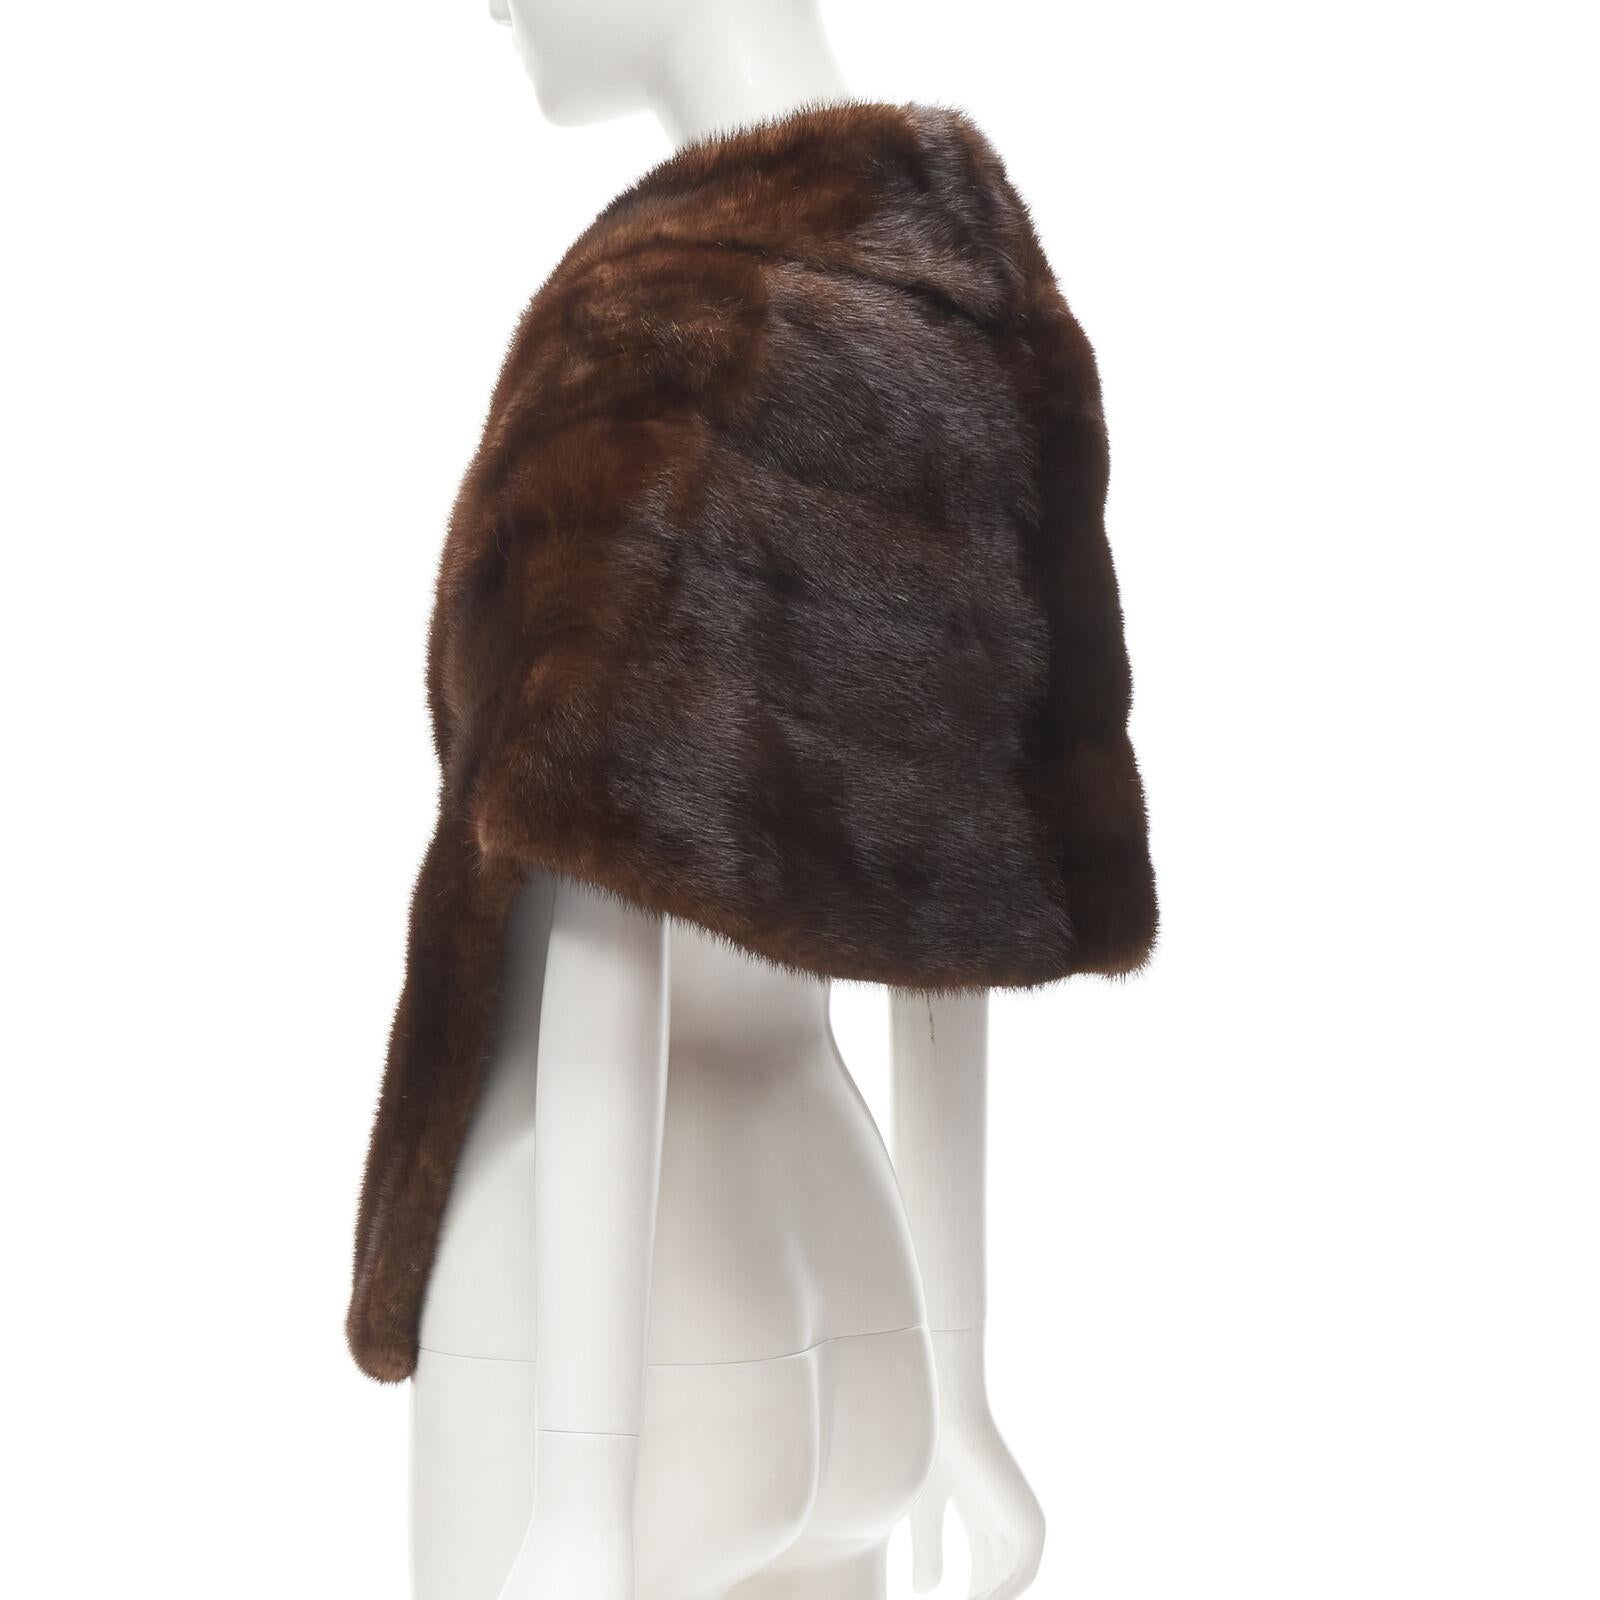 UNLABELLED brown mink fur shoulder shawl scarf hook eye closure For Sale 1